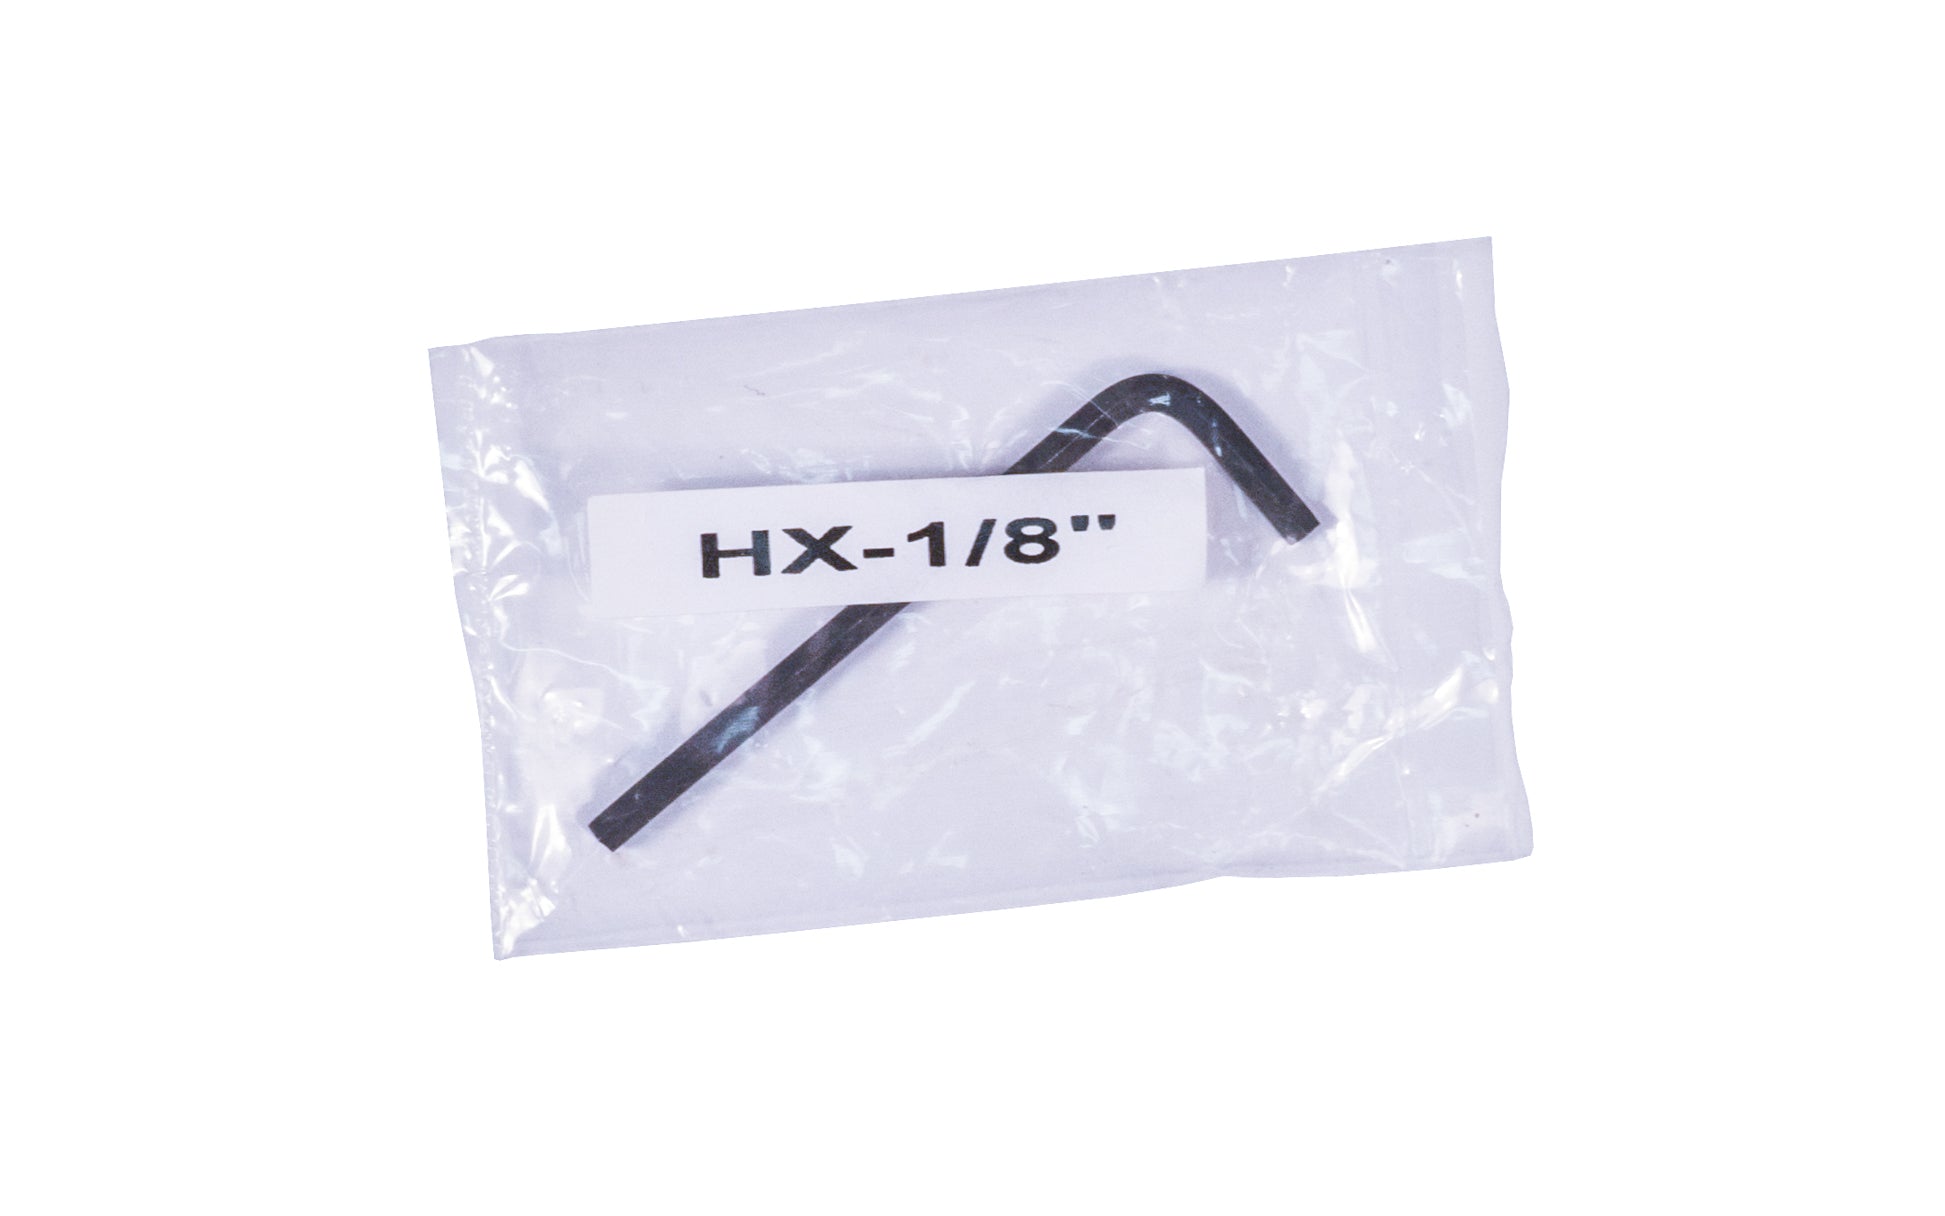 Package 1/8 hex key for set screws on doorknobs